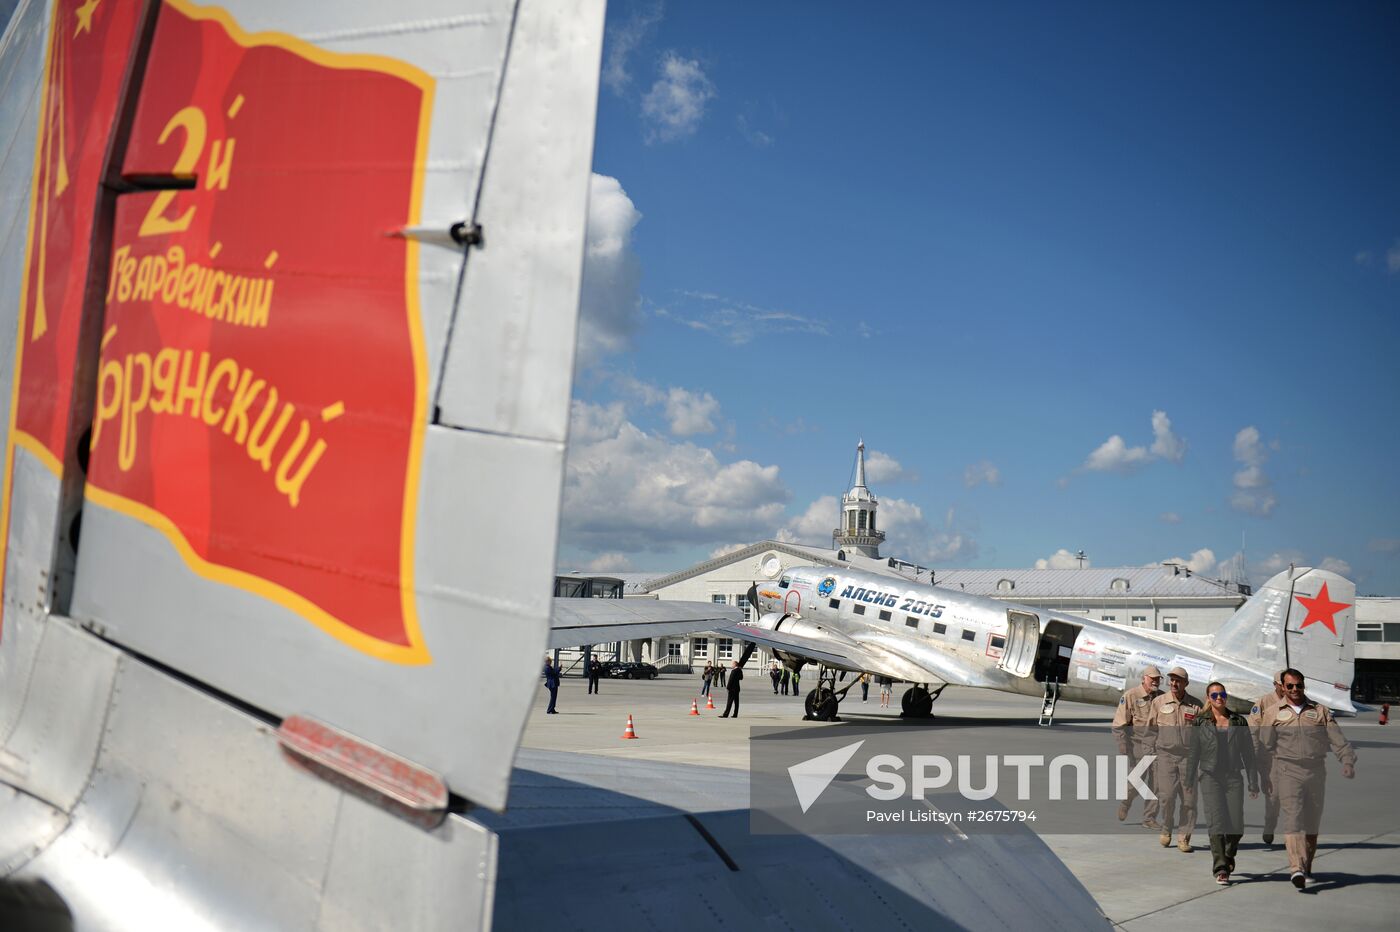 Alaska-Siberia 2015 project participants arrive at Koltsovo airport